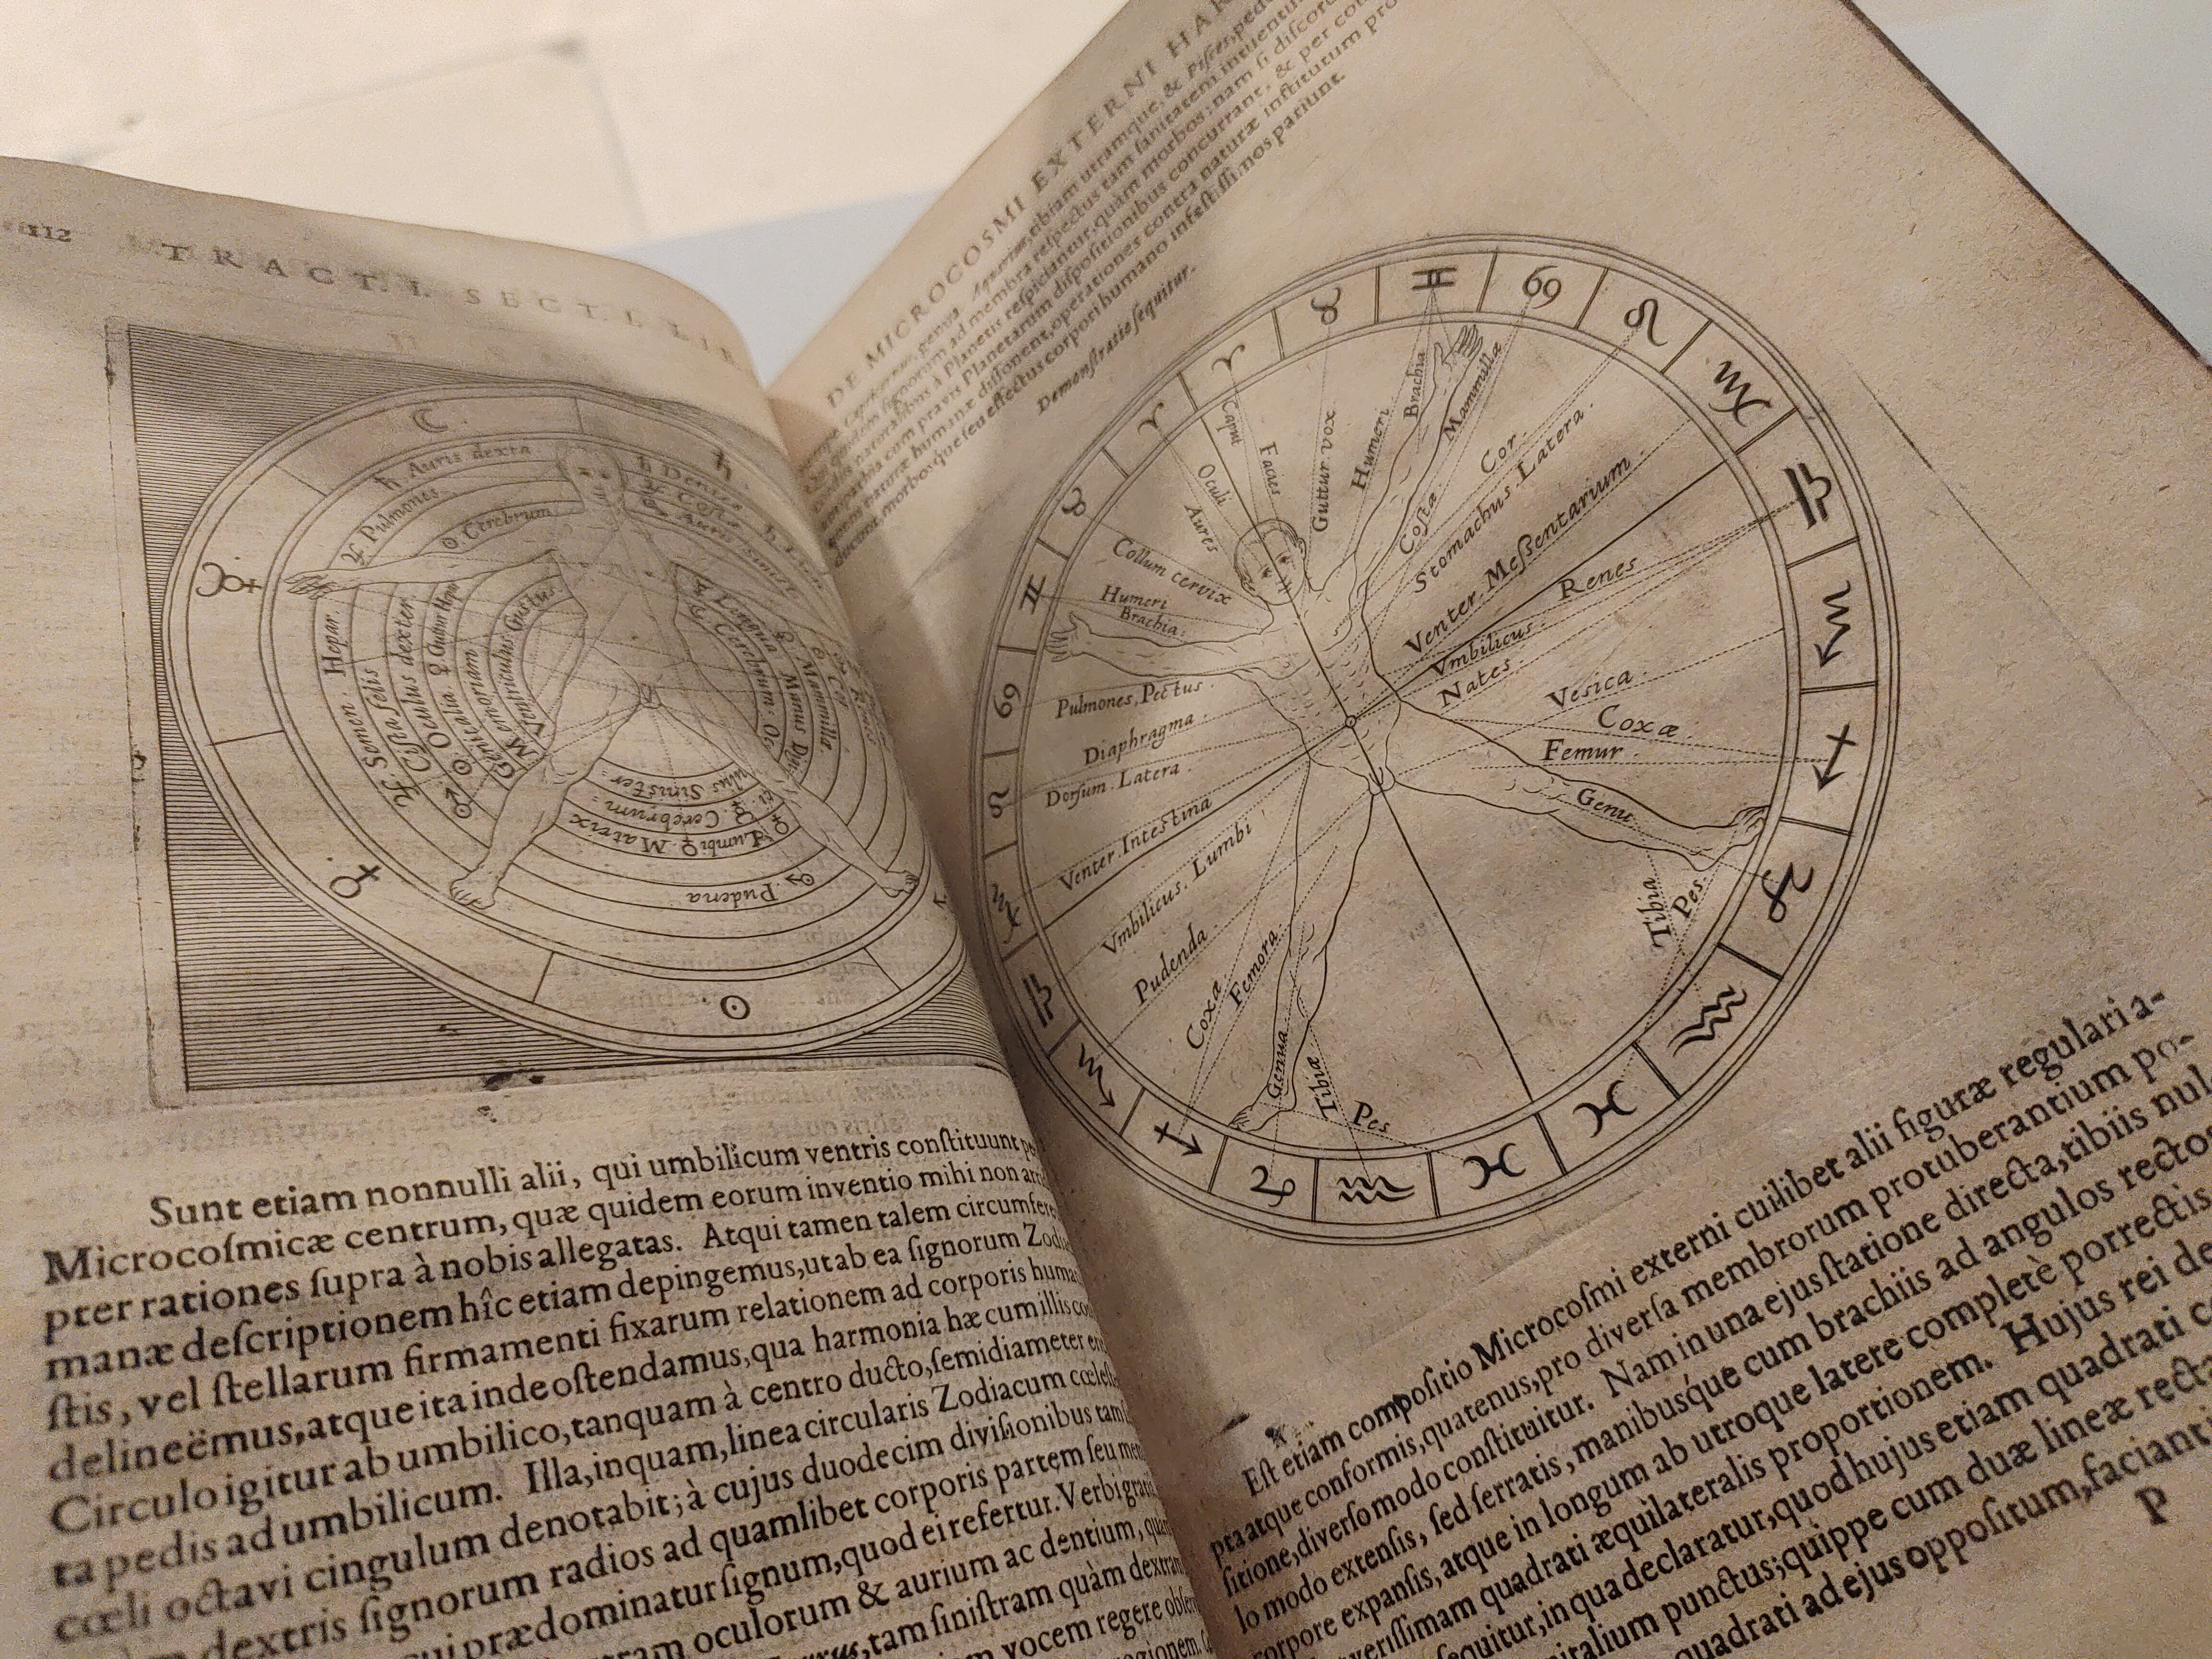 The Zodiac Man in Robert Fludd’s Utriusque cosmi maioris scilicet et minoris metaphysica, physica atque technica historia (Oppenheim, 1617-1619)